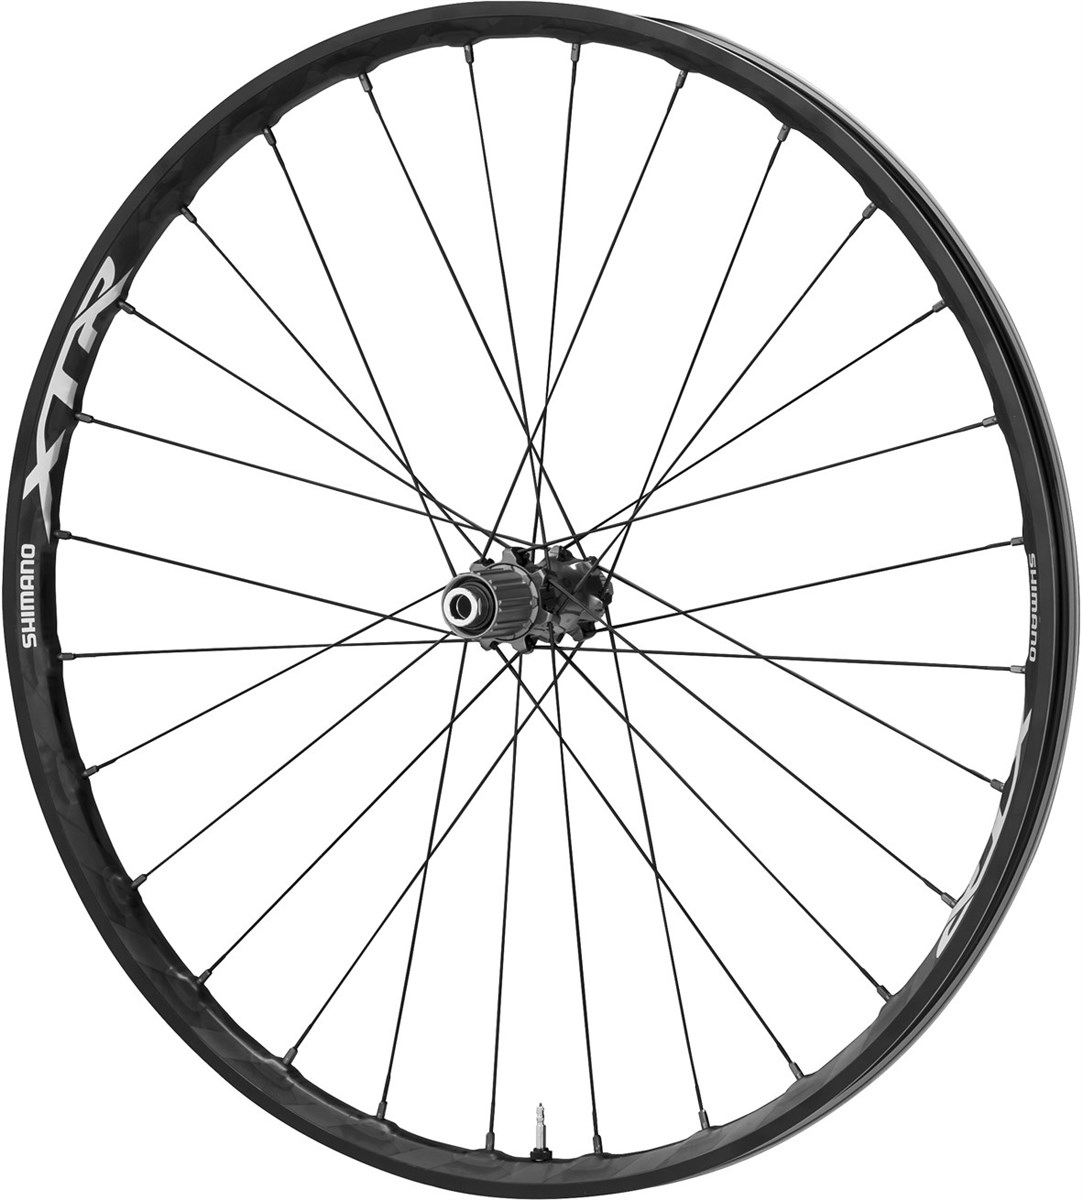 Shimano XTR Mountain Bike Wheel, 12 x 142mm, 27.5 (650b) Carbon Clincher product image